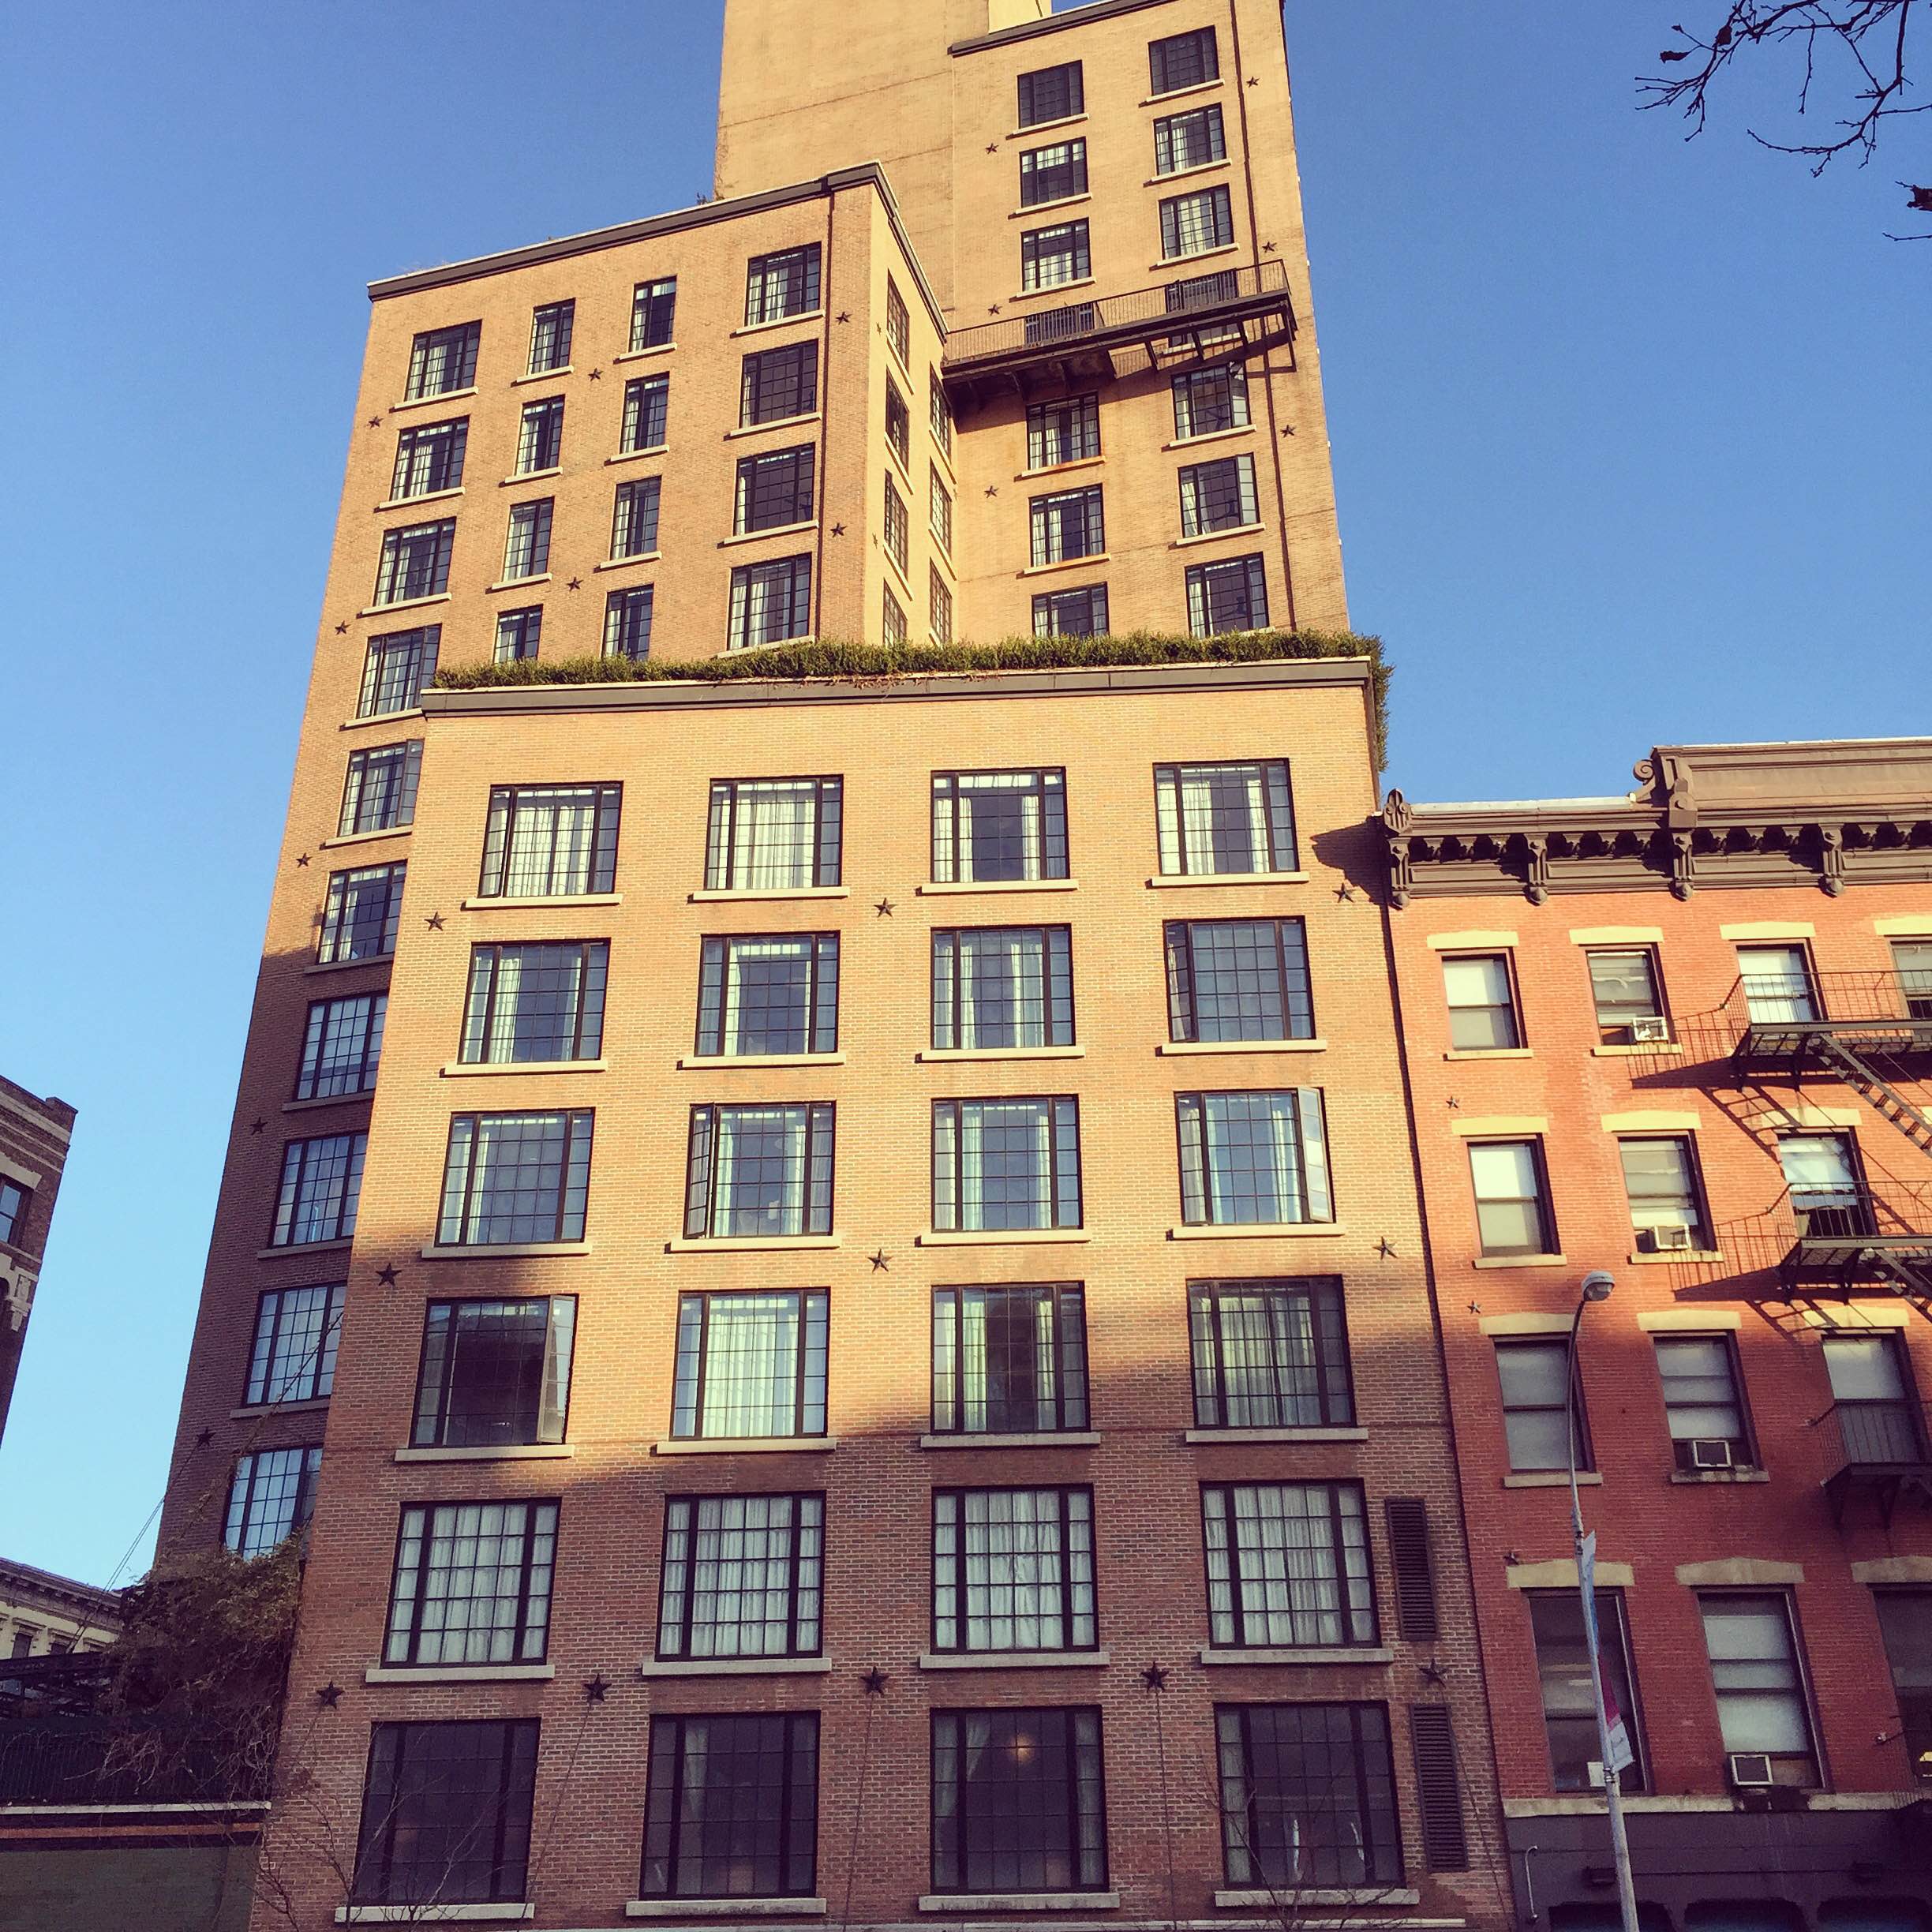 Stepbacked Buildings in Midtown Manhattan